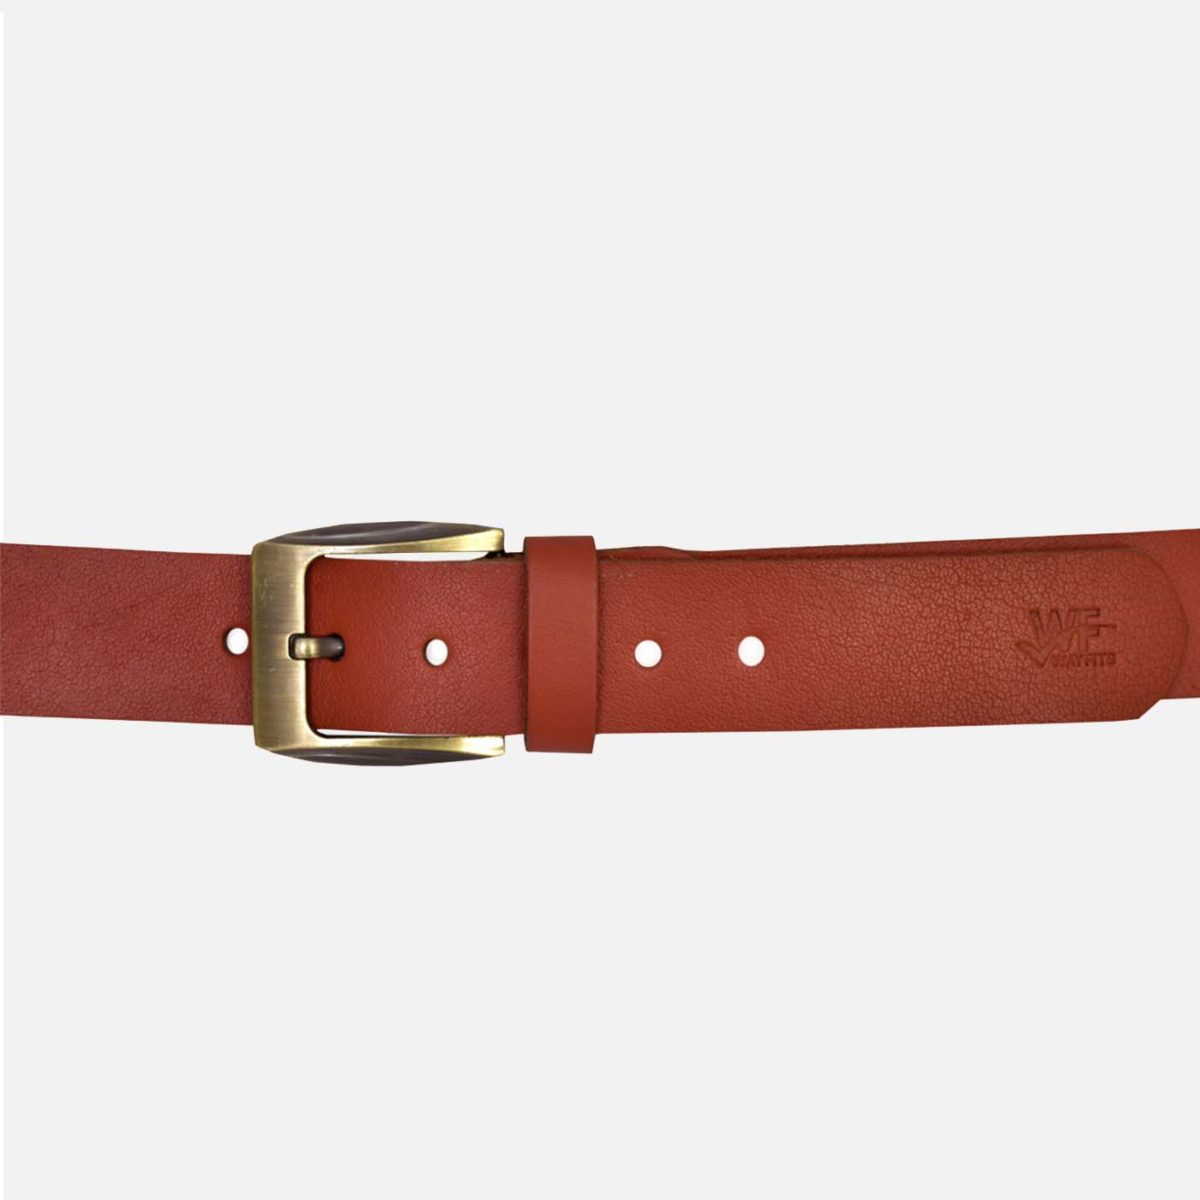 Leather belts in Pakistan